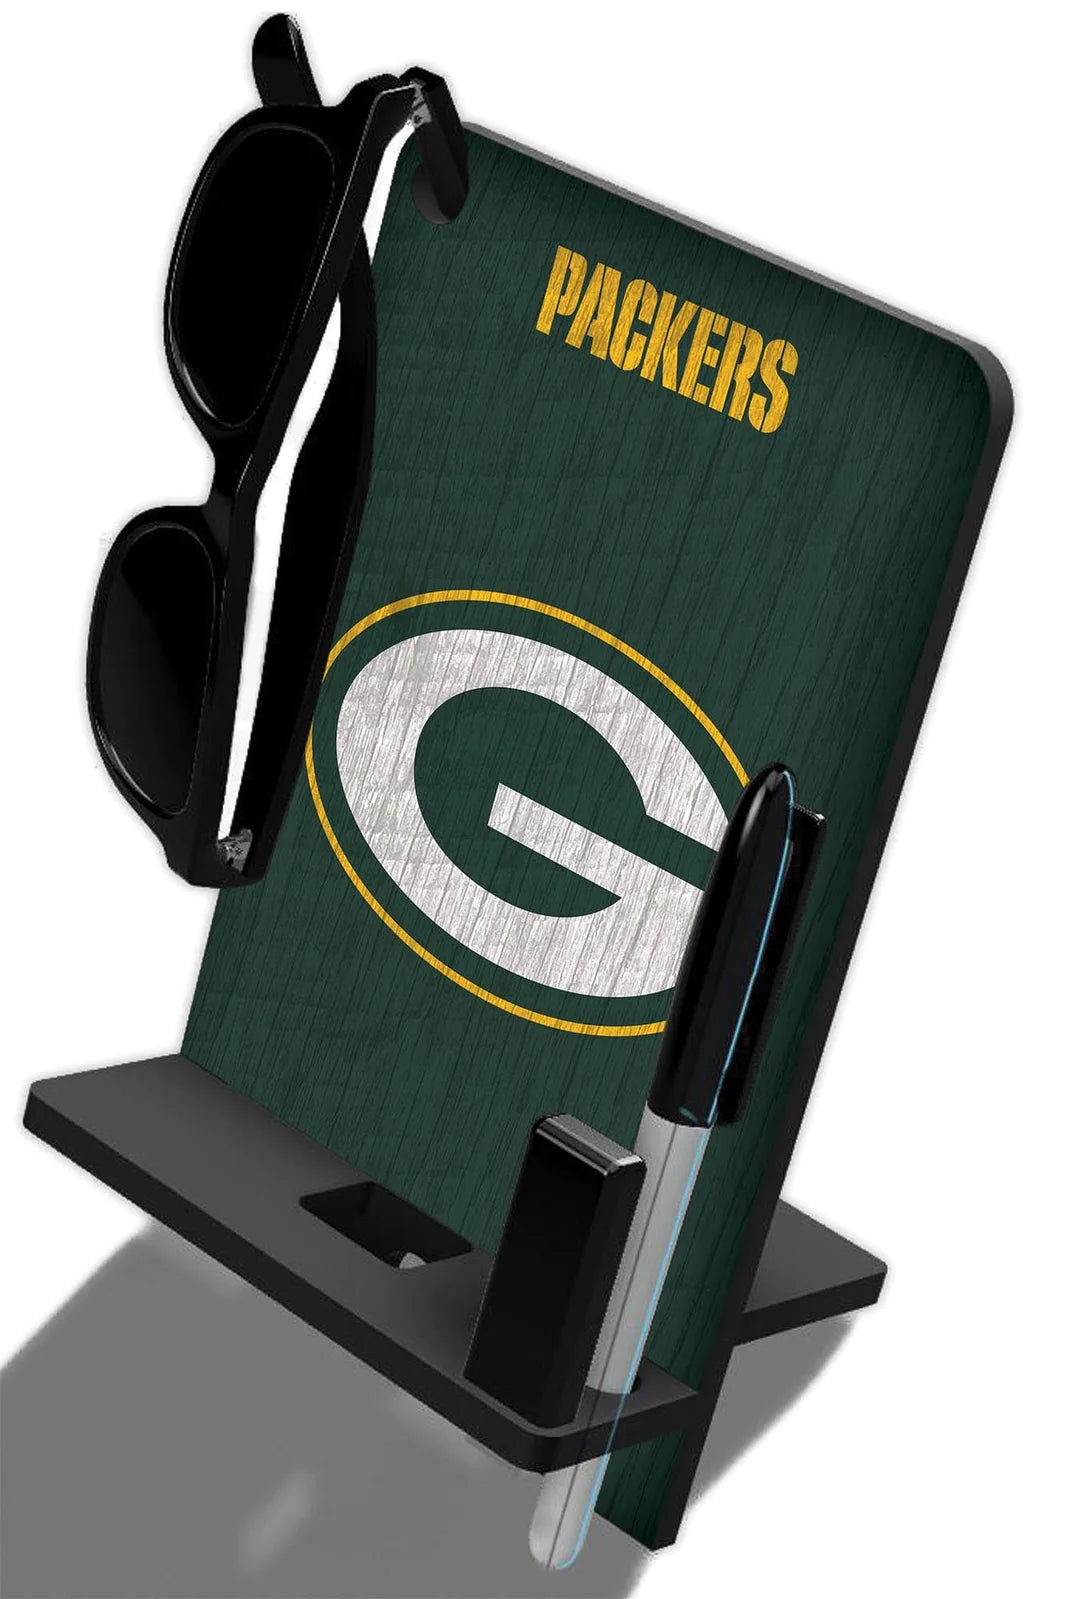 Base de escritorio para Celular Phone Stand NFL Packers